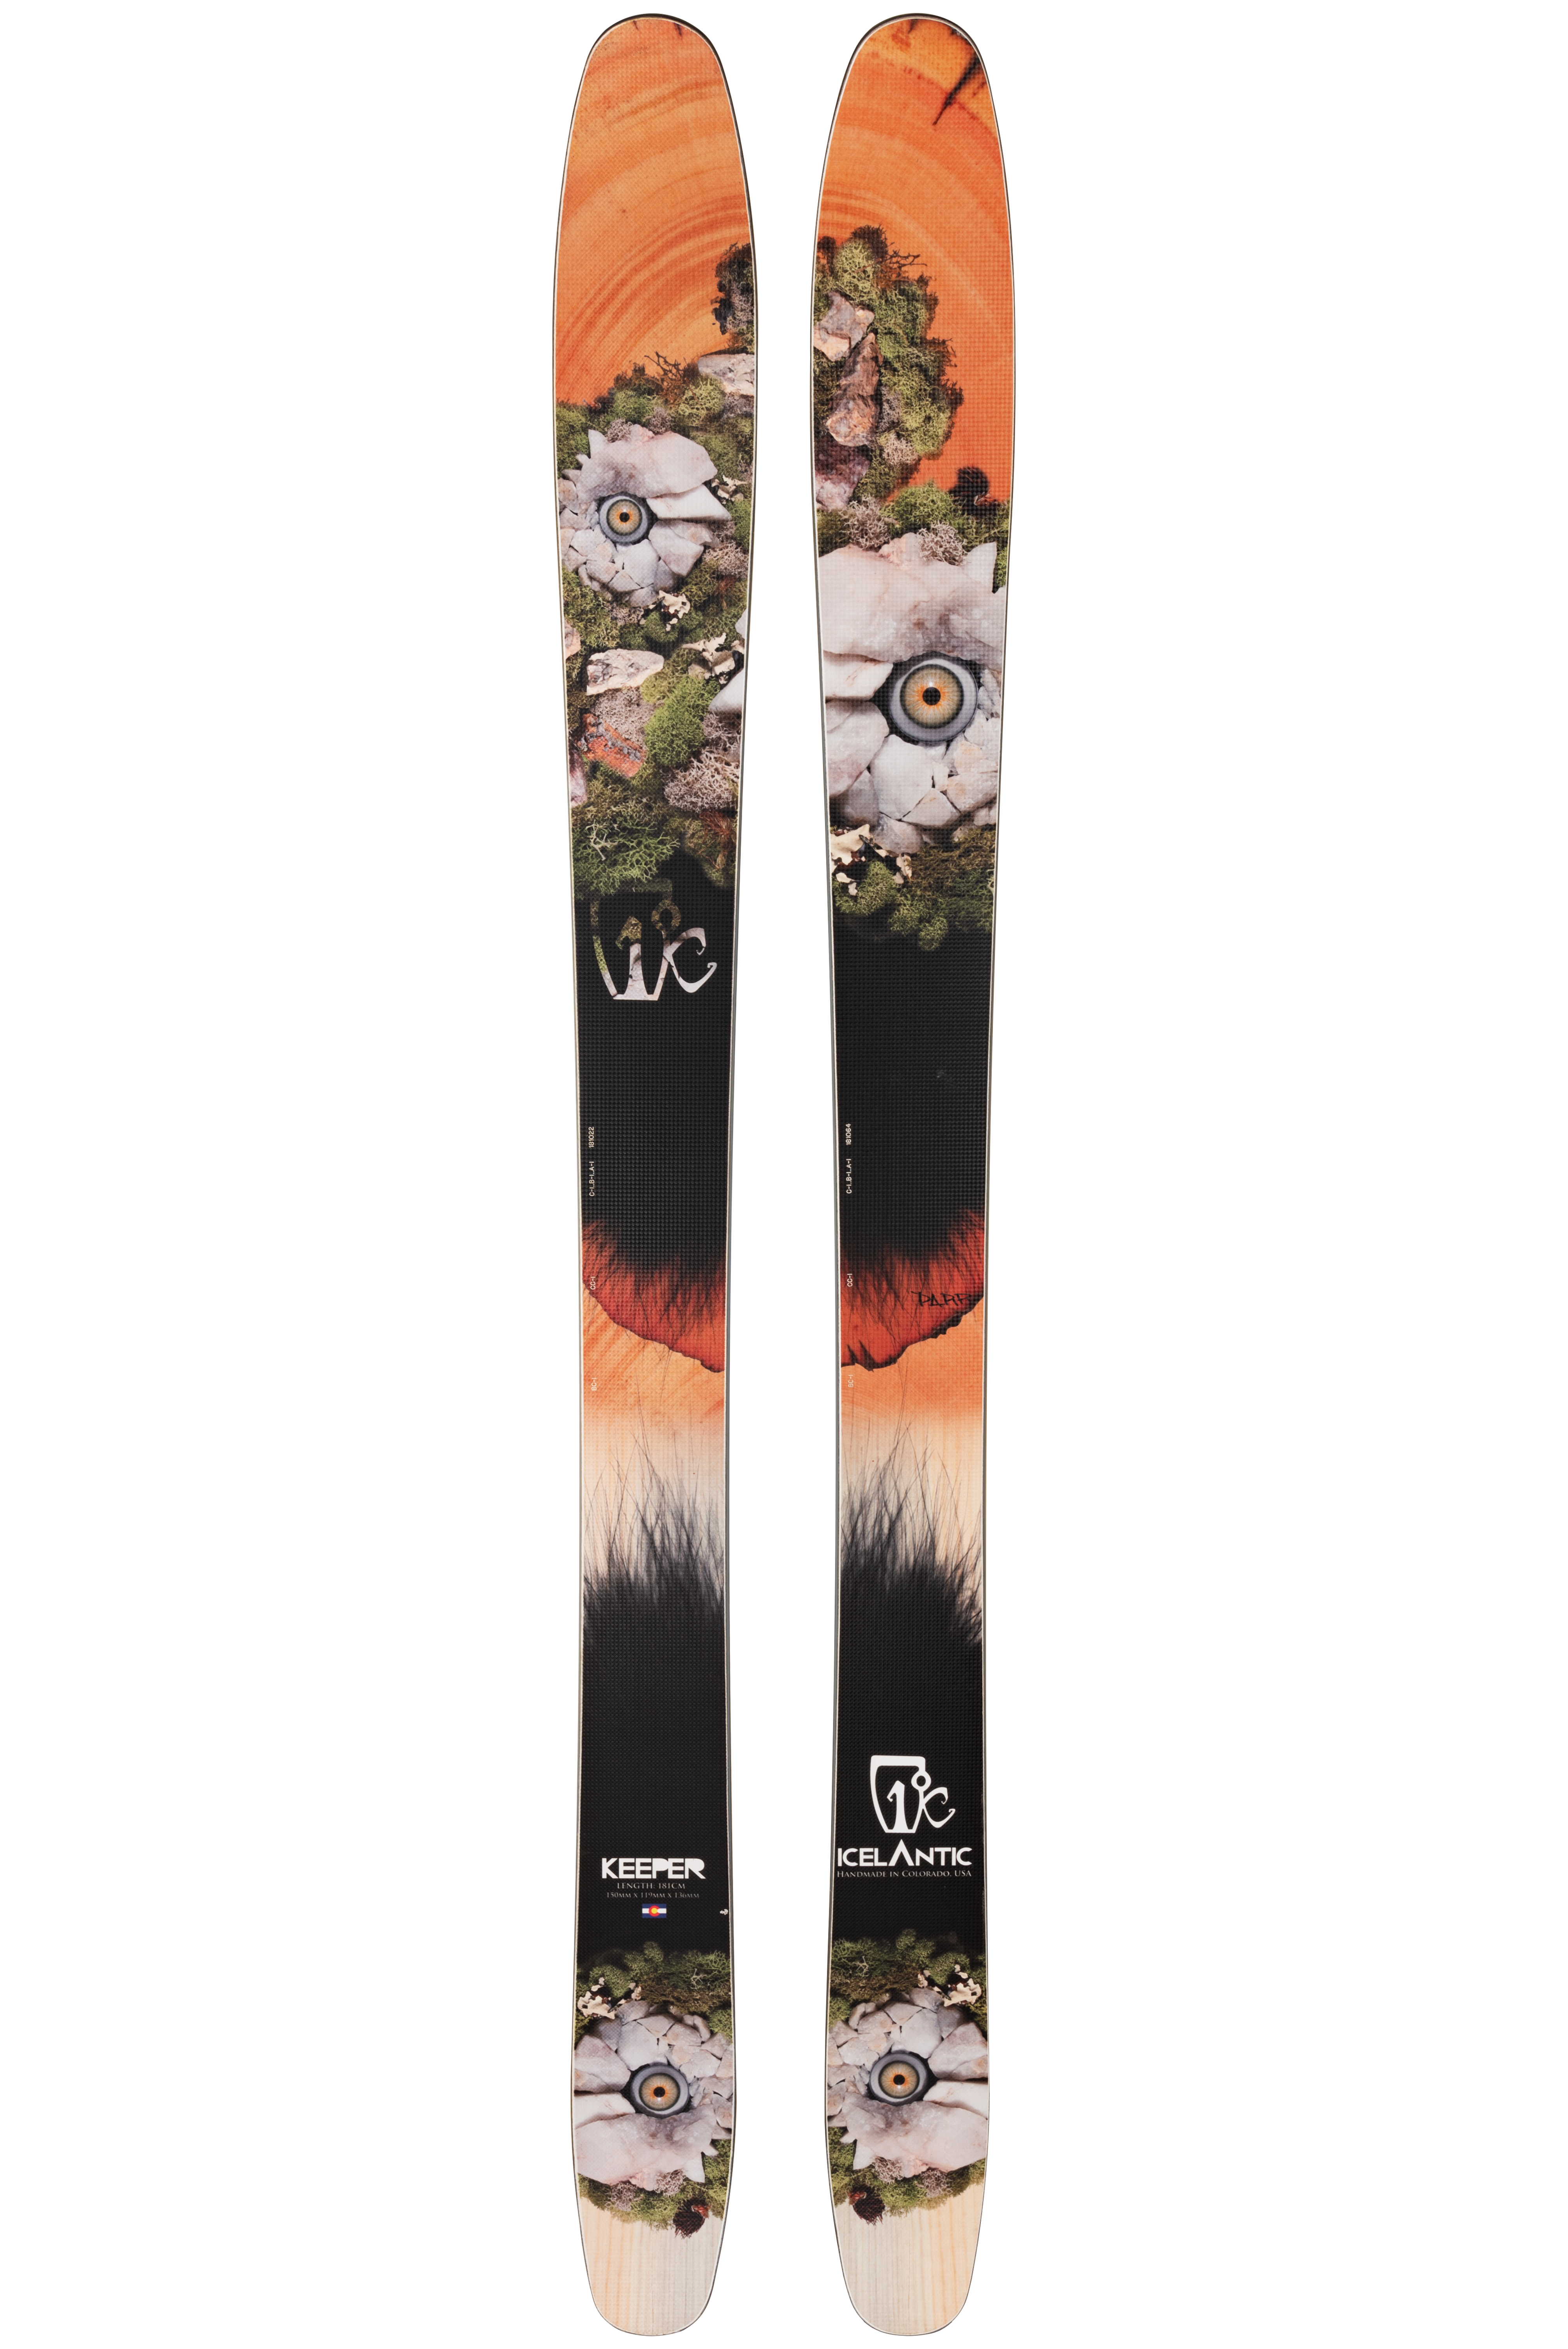 Лыжи без креплений Icelantic Keeper 119 2013/2014 191cm